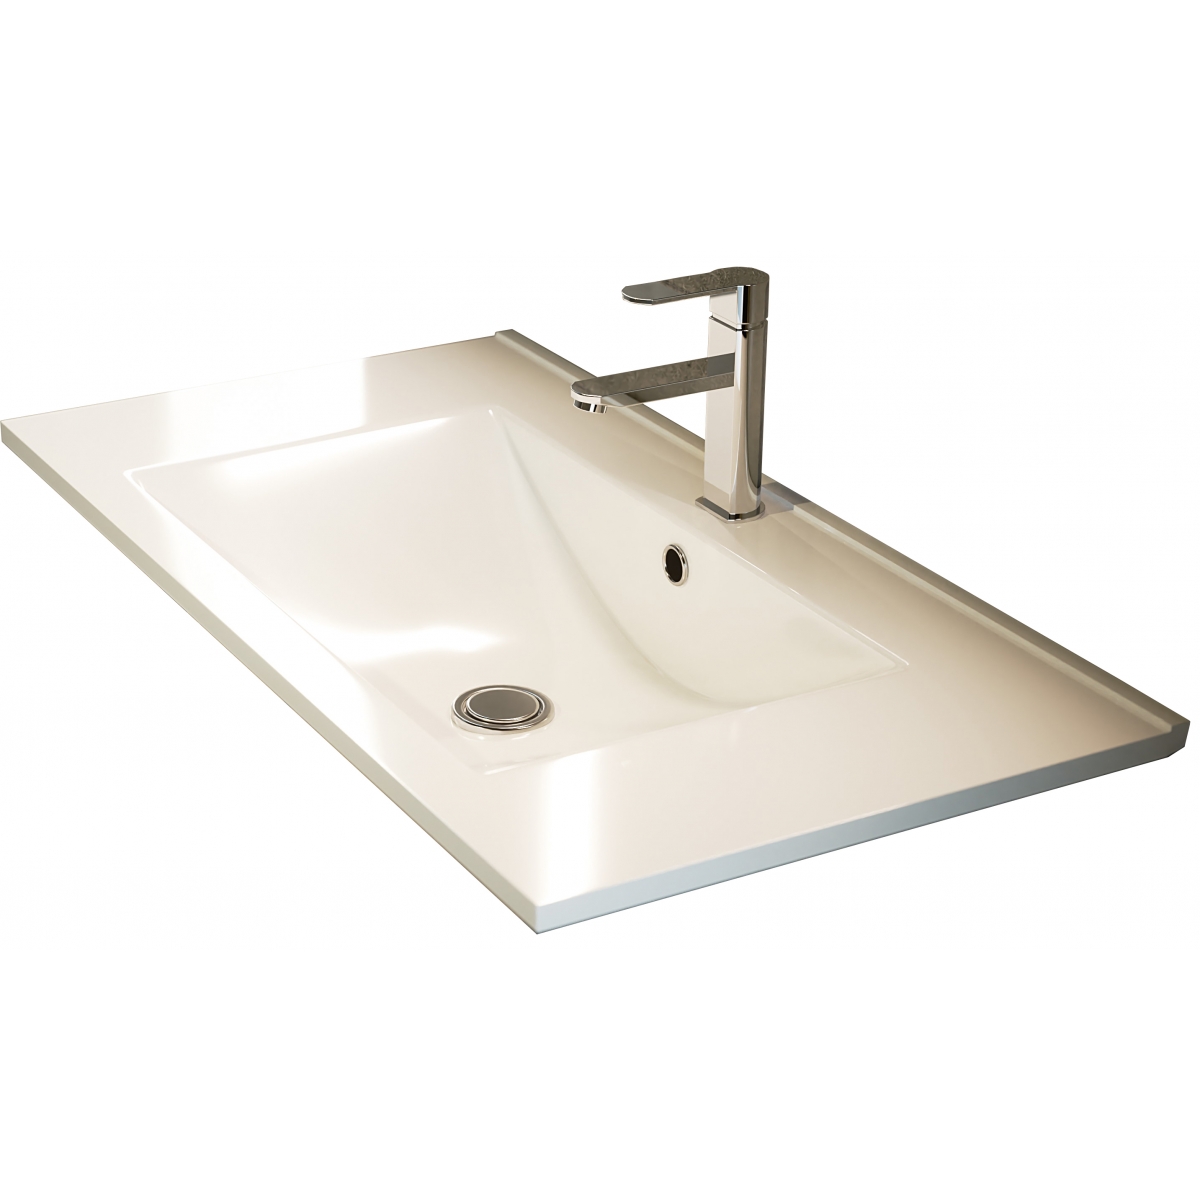 Fotos ambiente de Mueble de baño de suelo Bolton de 80 cm de ancho color Cemento con lavabo integrado [54098]